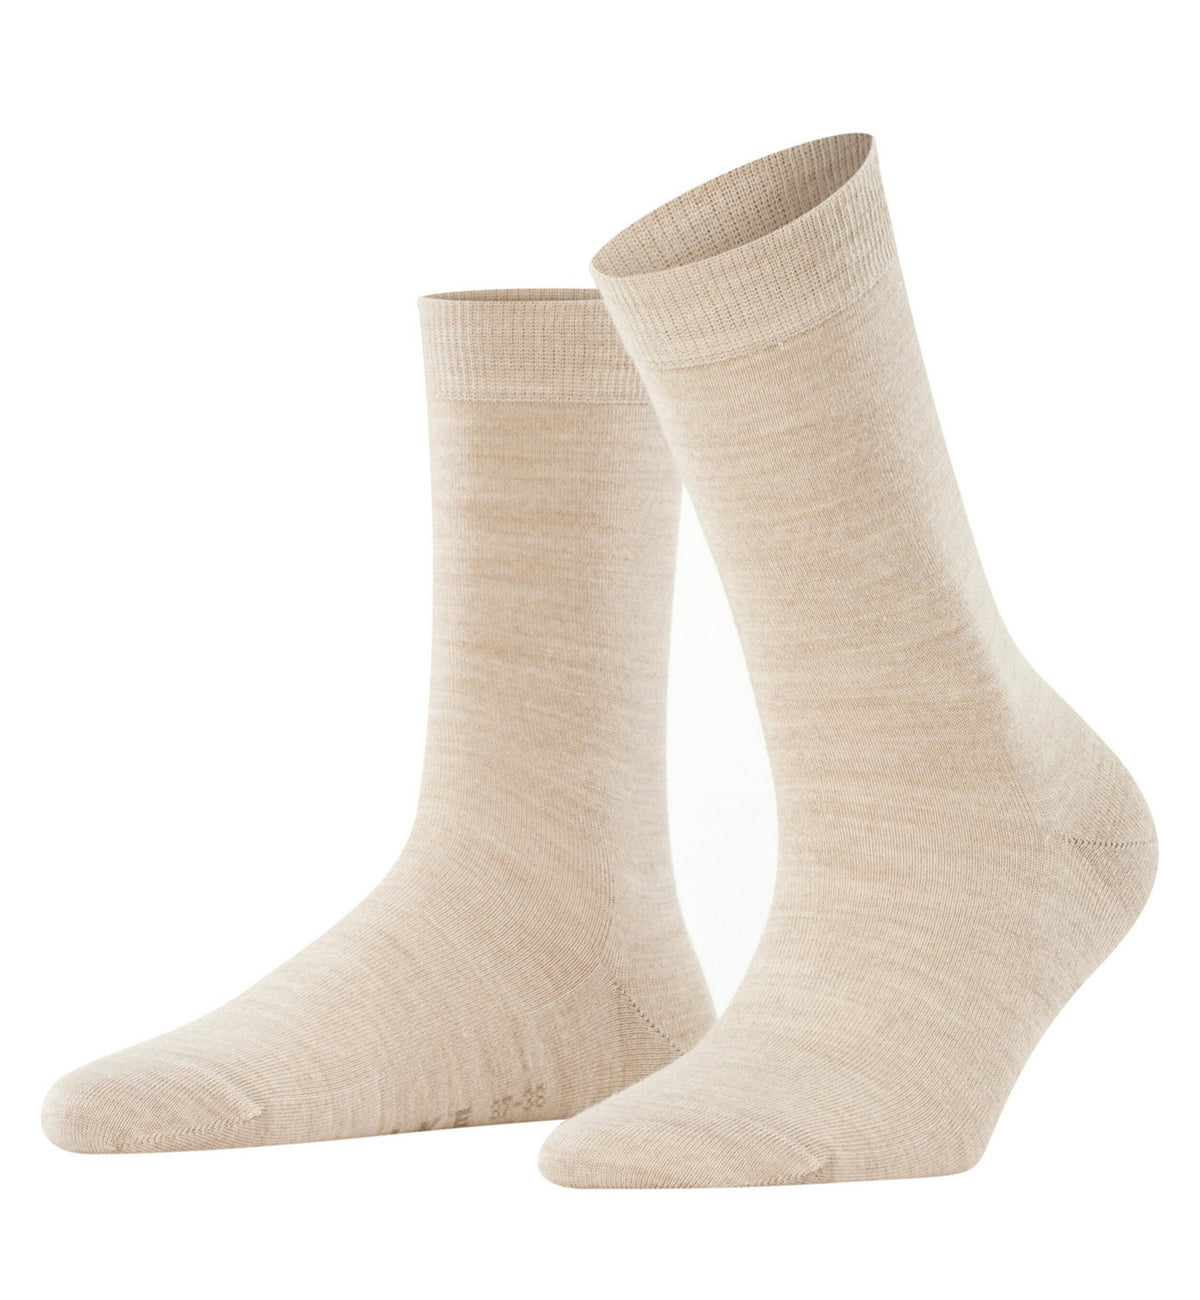 FALKE Softmerino Crew Socks (47488),6.5/7.5,Linen Melange - Linen Melange,6.5/7.5